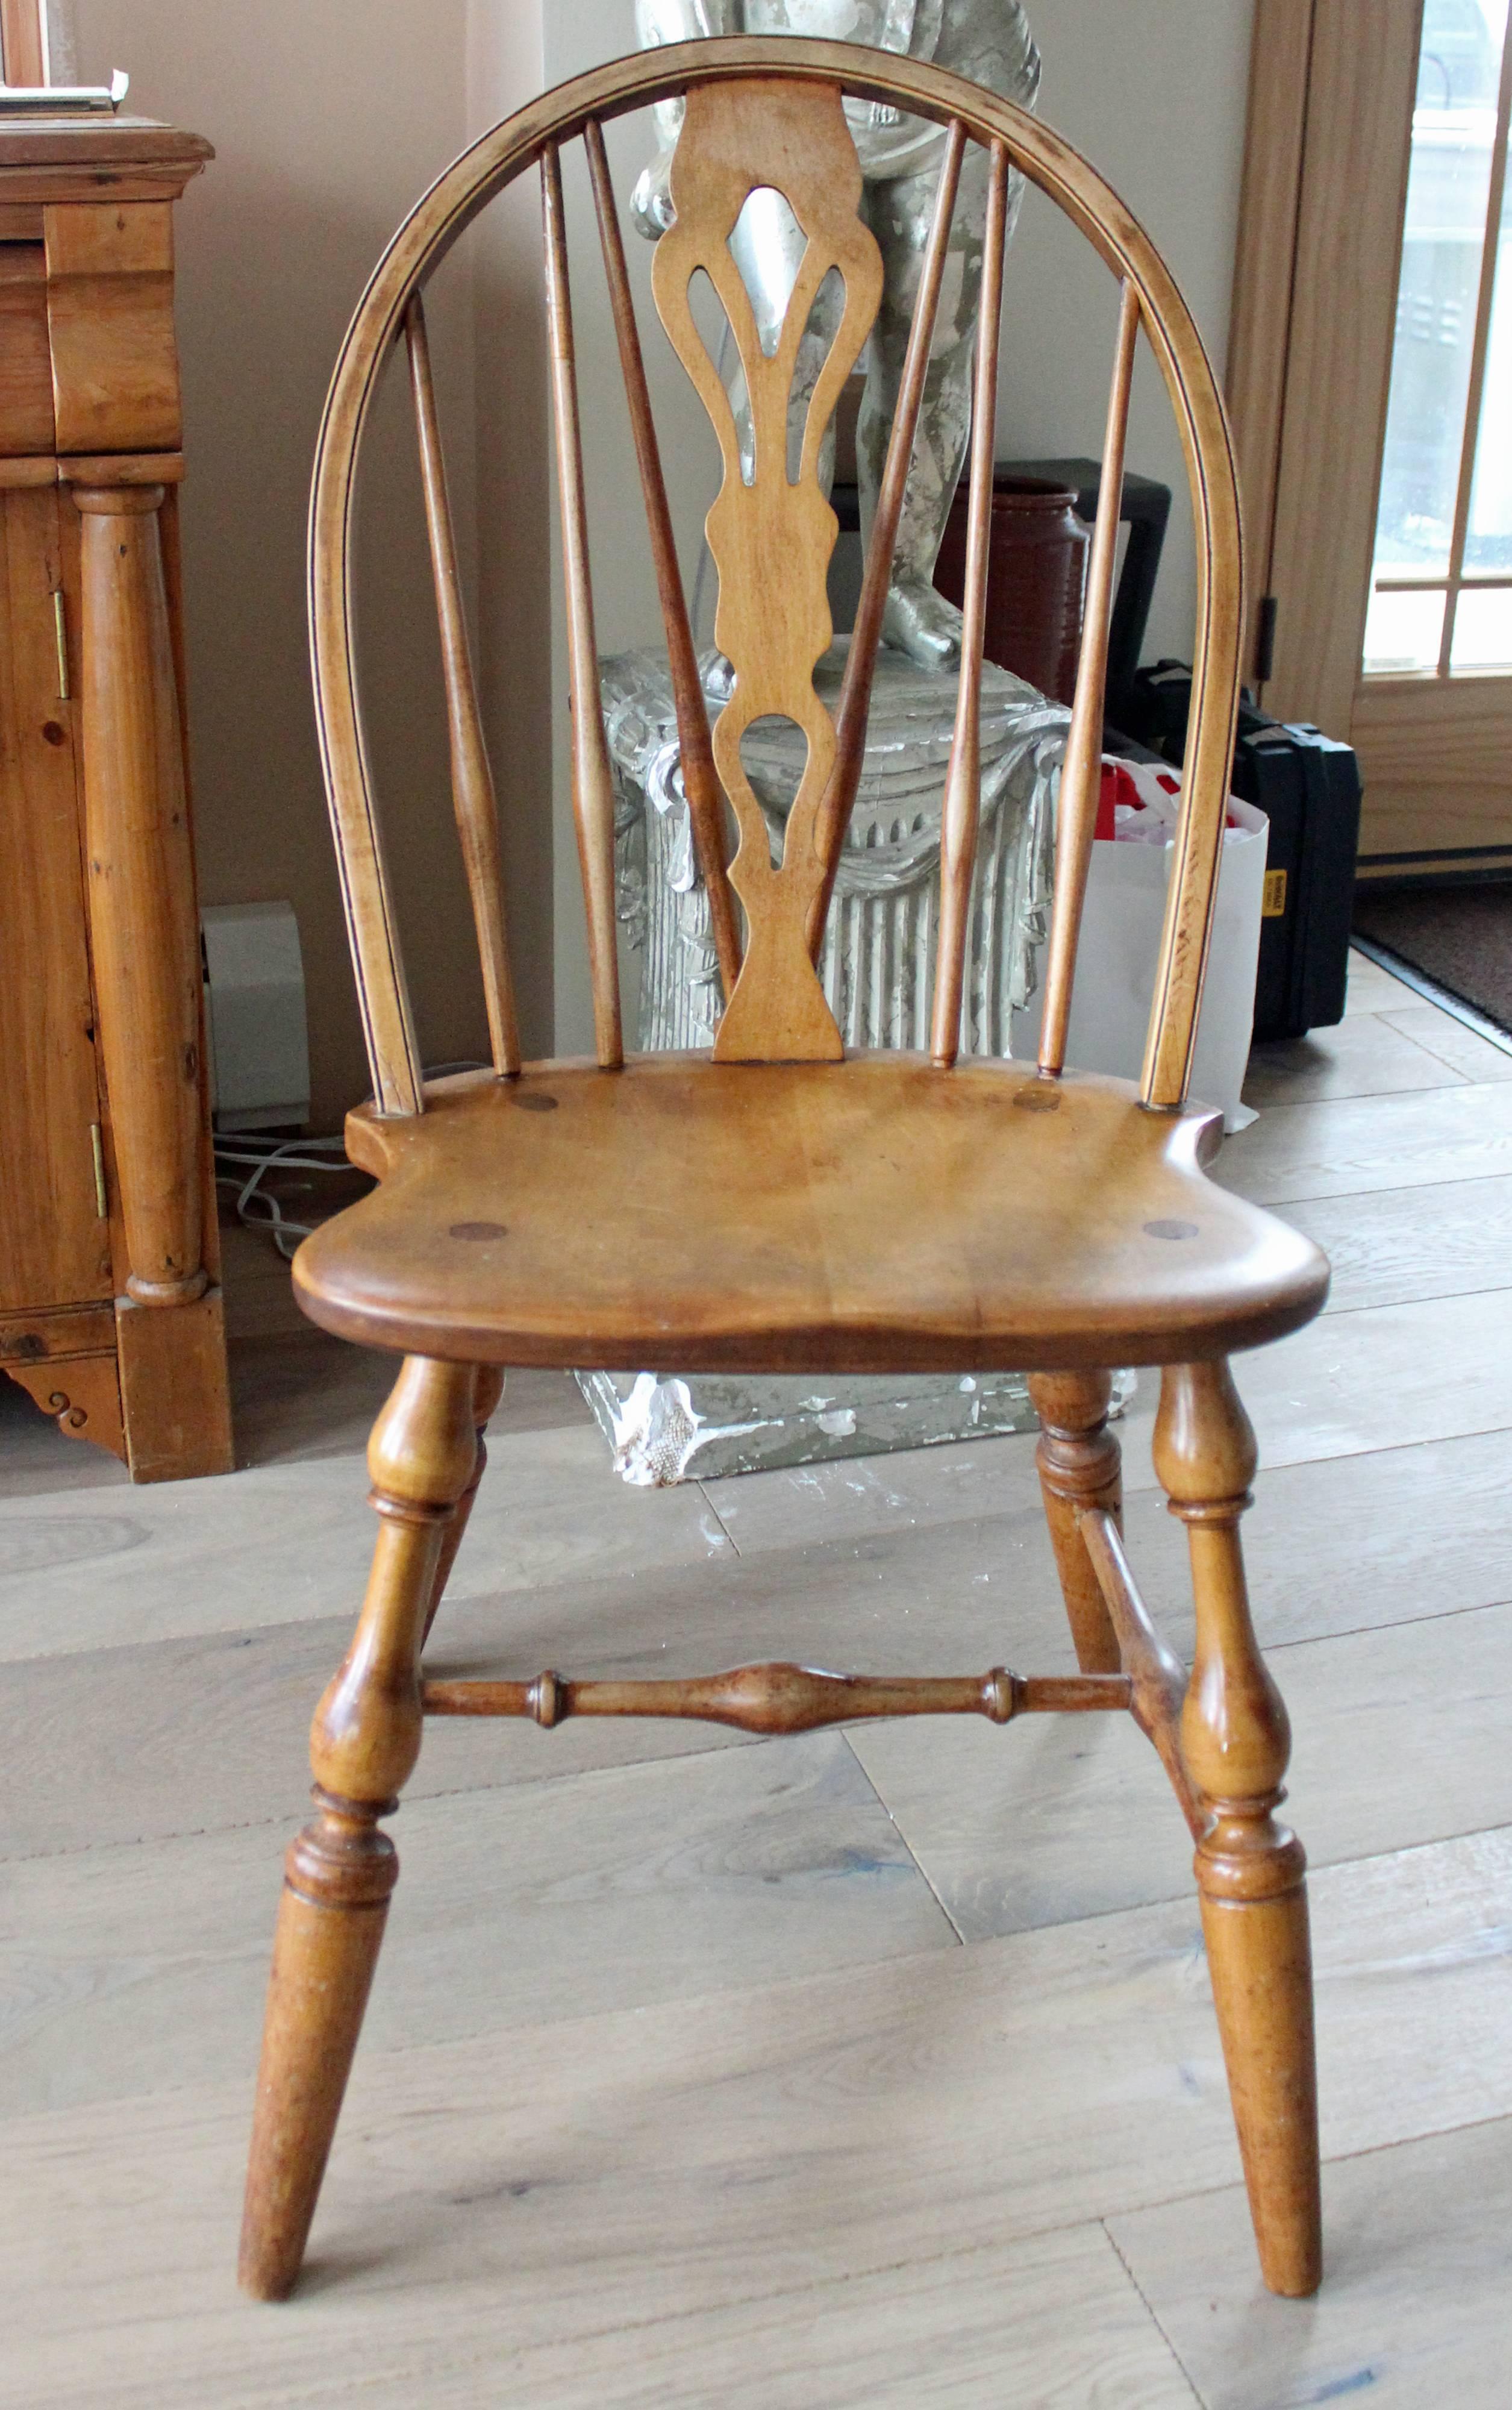 Huit chaises de salle à manger Windsor anglaises à dossier en arc de cercle, avec une plinthe décorative et des pieds finement tournés, en frêne, ainsi que des chaises d'hôte et d'hôtesse coordonnées, avec des détails d'assise en bousculade.